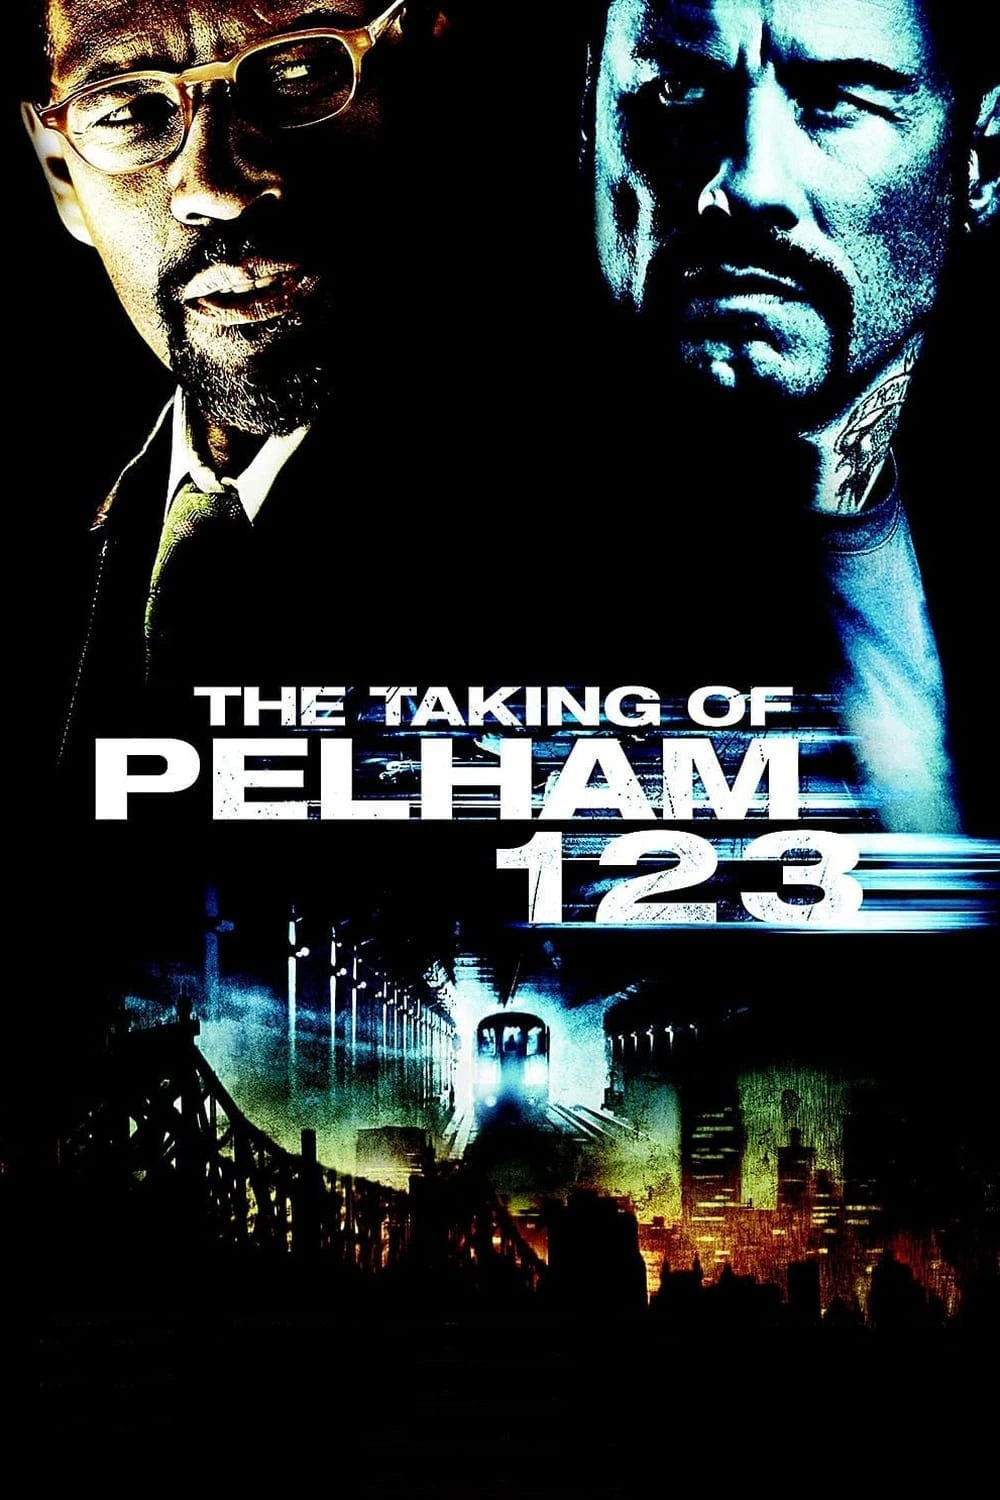 The Taking of Pelham 1 2 3 | The Taking of Pelham 1 2 3 (2009)